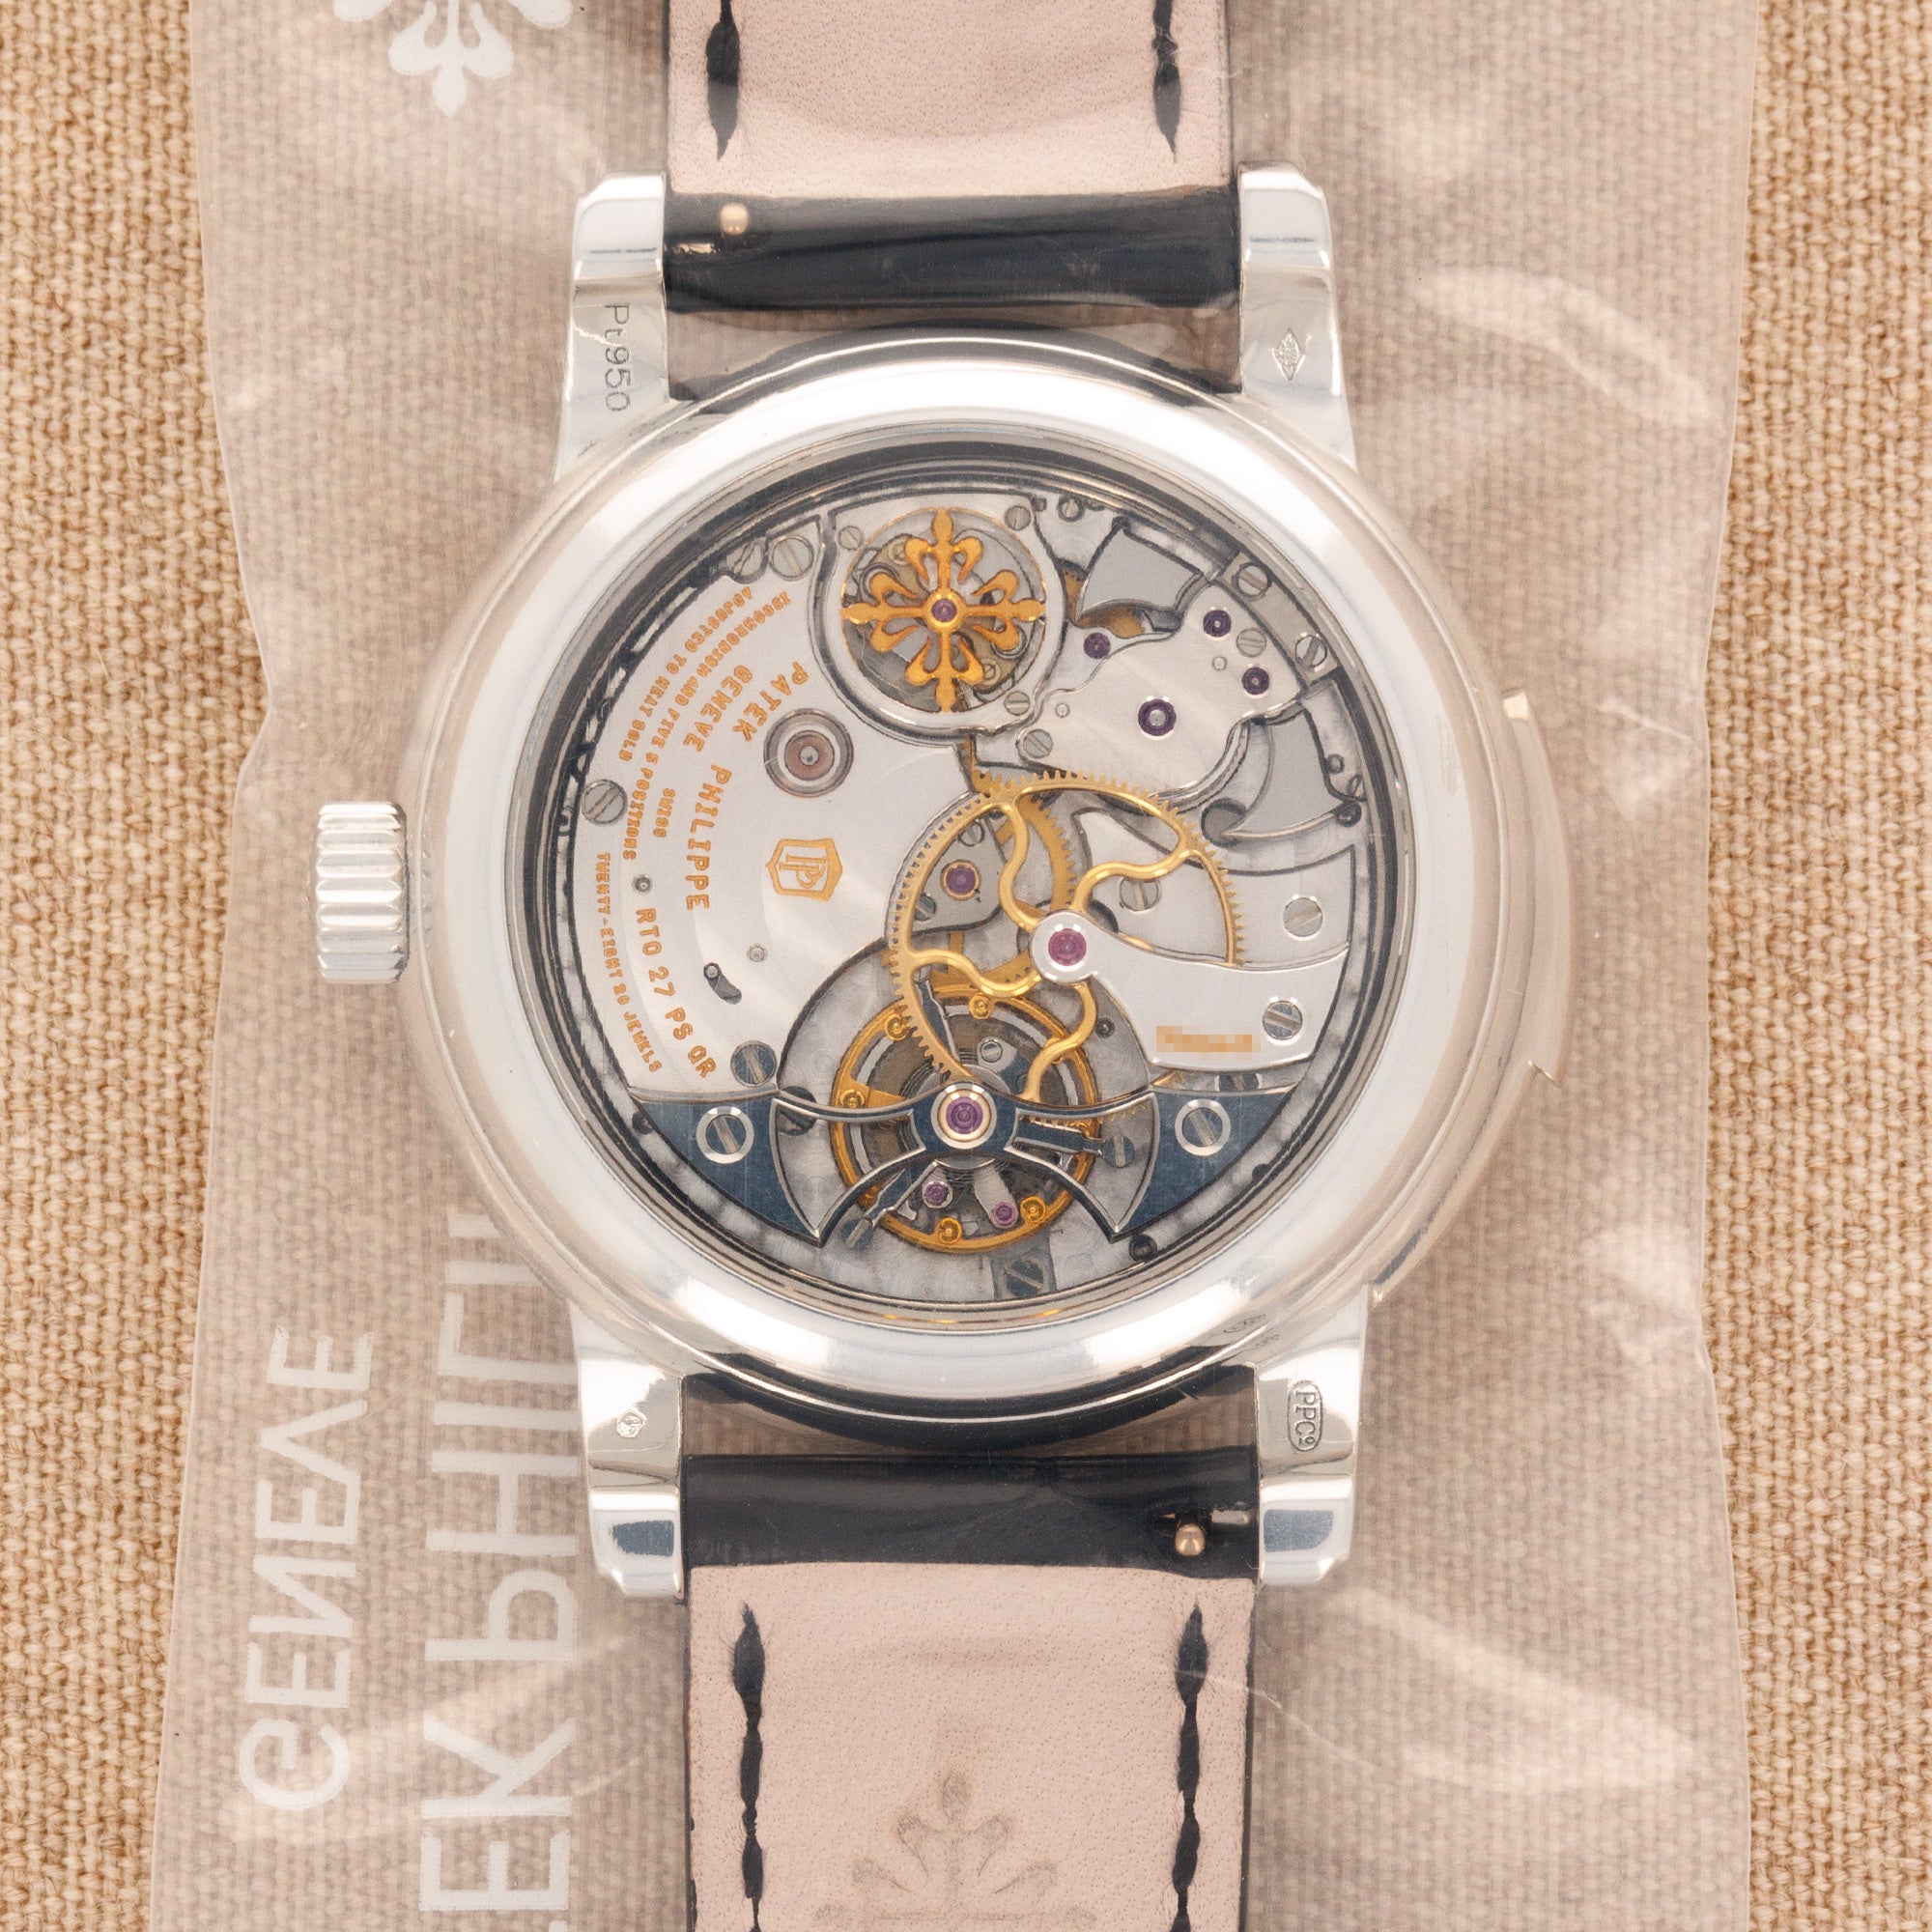 Patek Philippe Platinum Perpetual Calendar Tourbillon Watch Ref. 5016